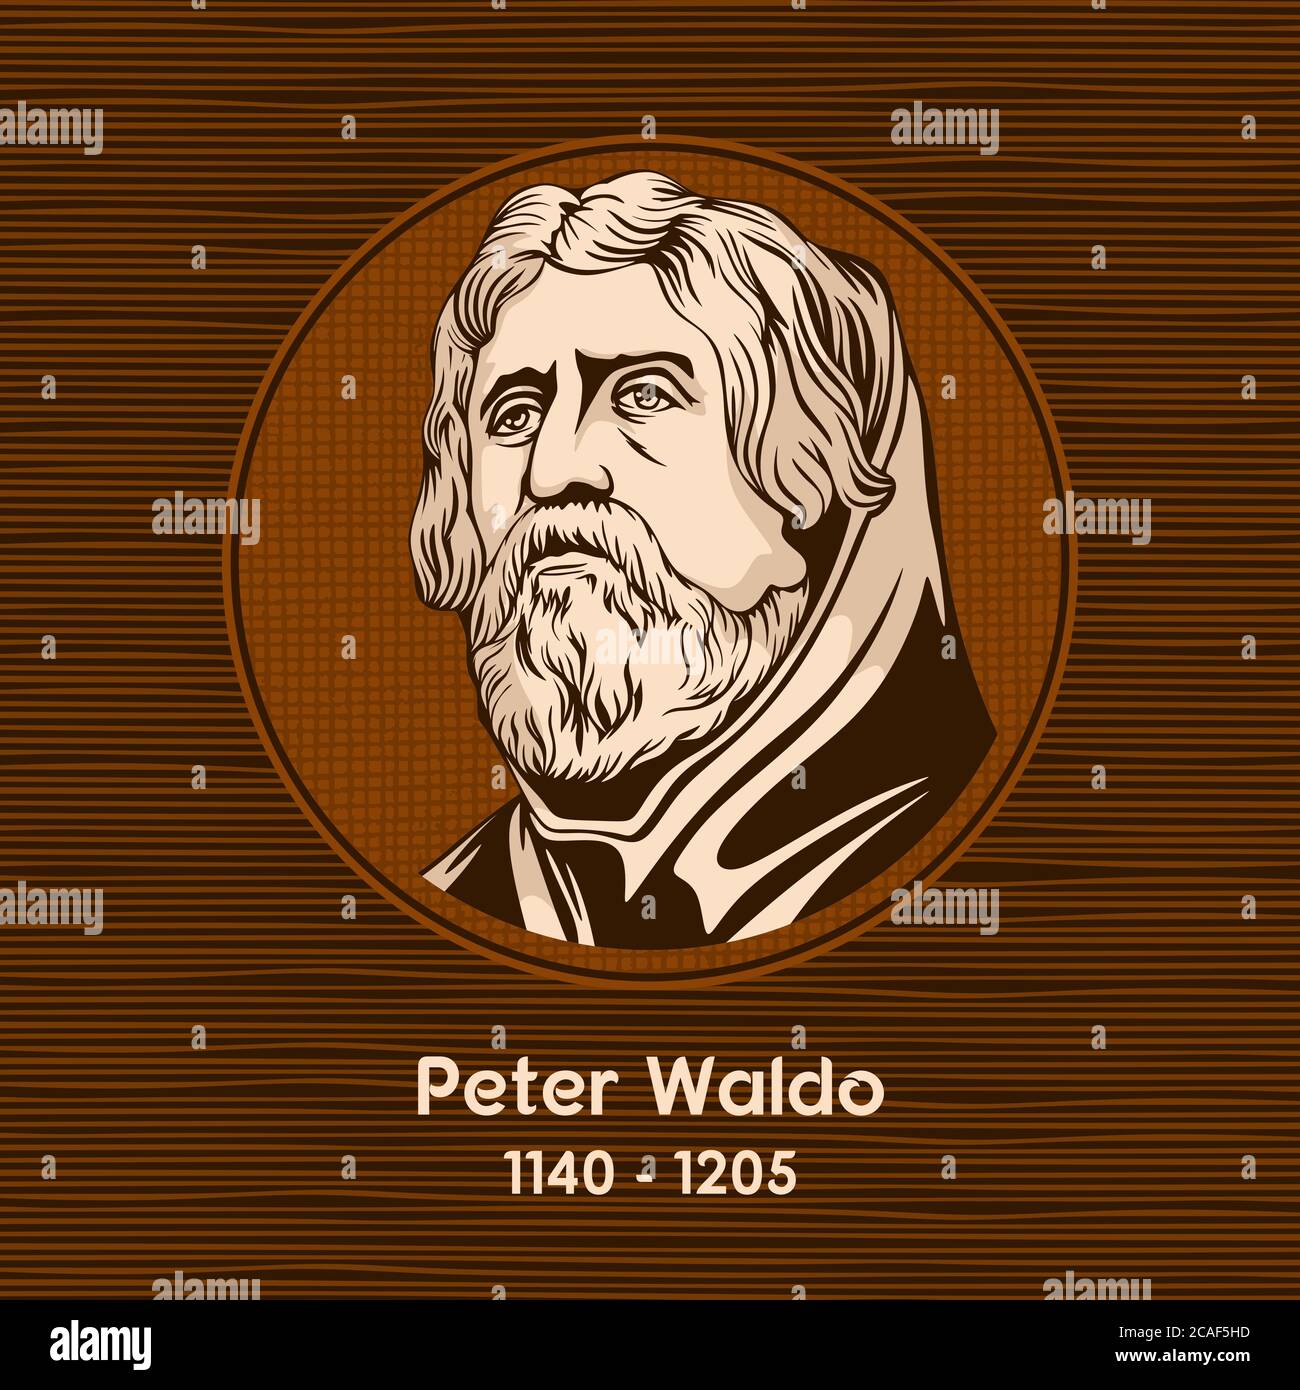 Peter Waldo (1140 - 1205) fu un capo dei Valdesi, un movimento spirituale cristiano del Medioevo. Illustrazione Vettoriale